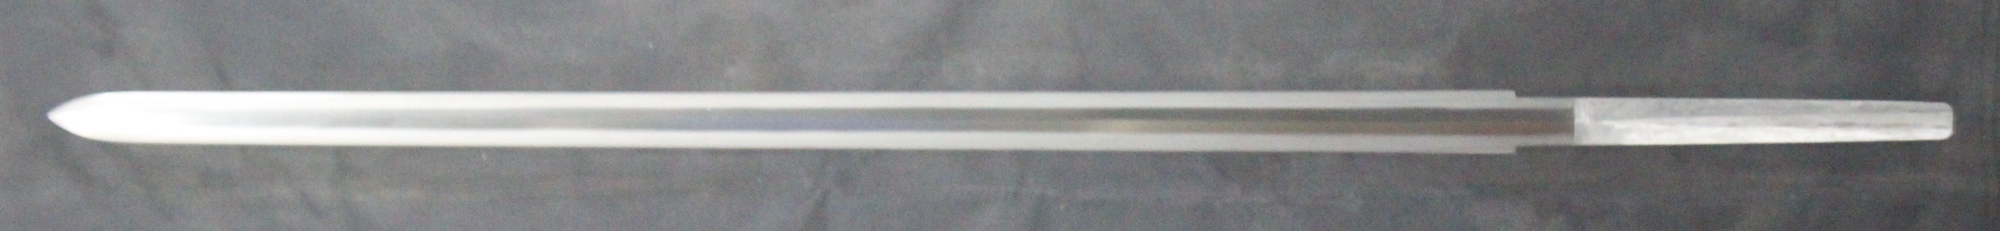 2001劍